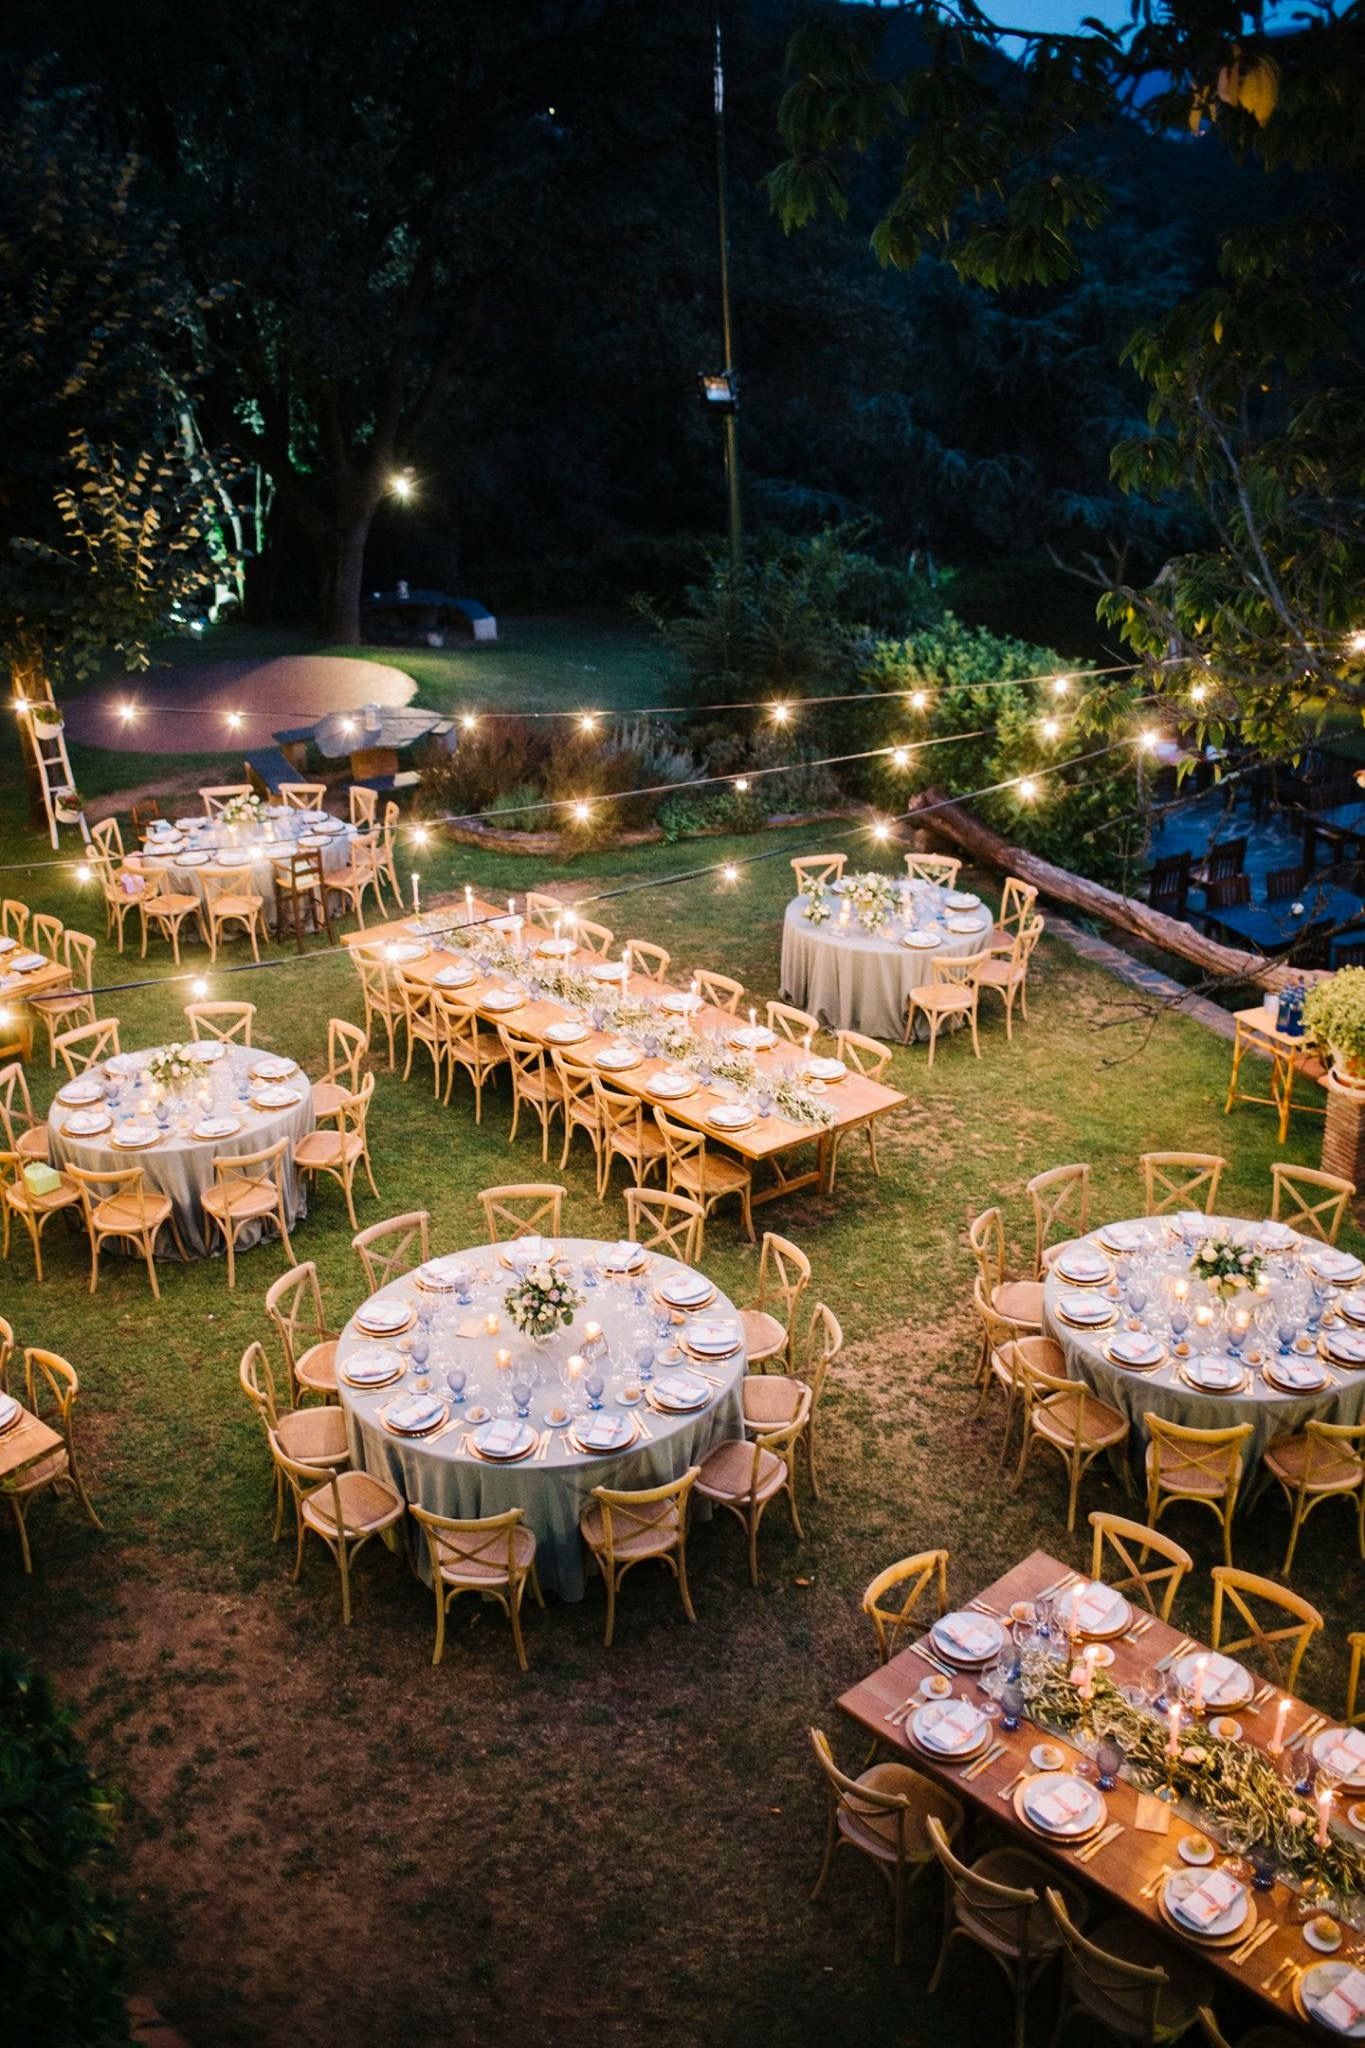 décoration lumineuse mariage guirlandes tables rondes réception à l'extérieur